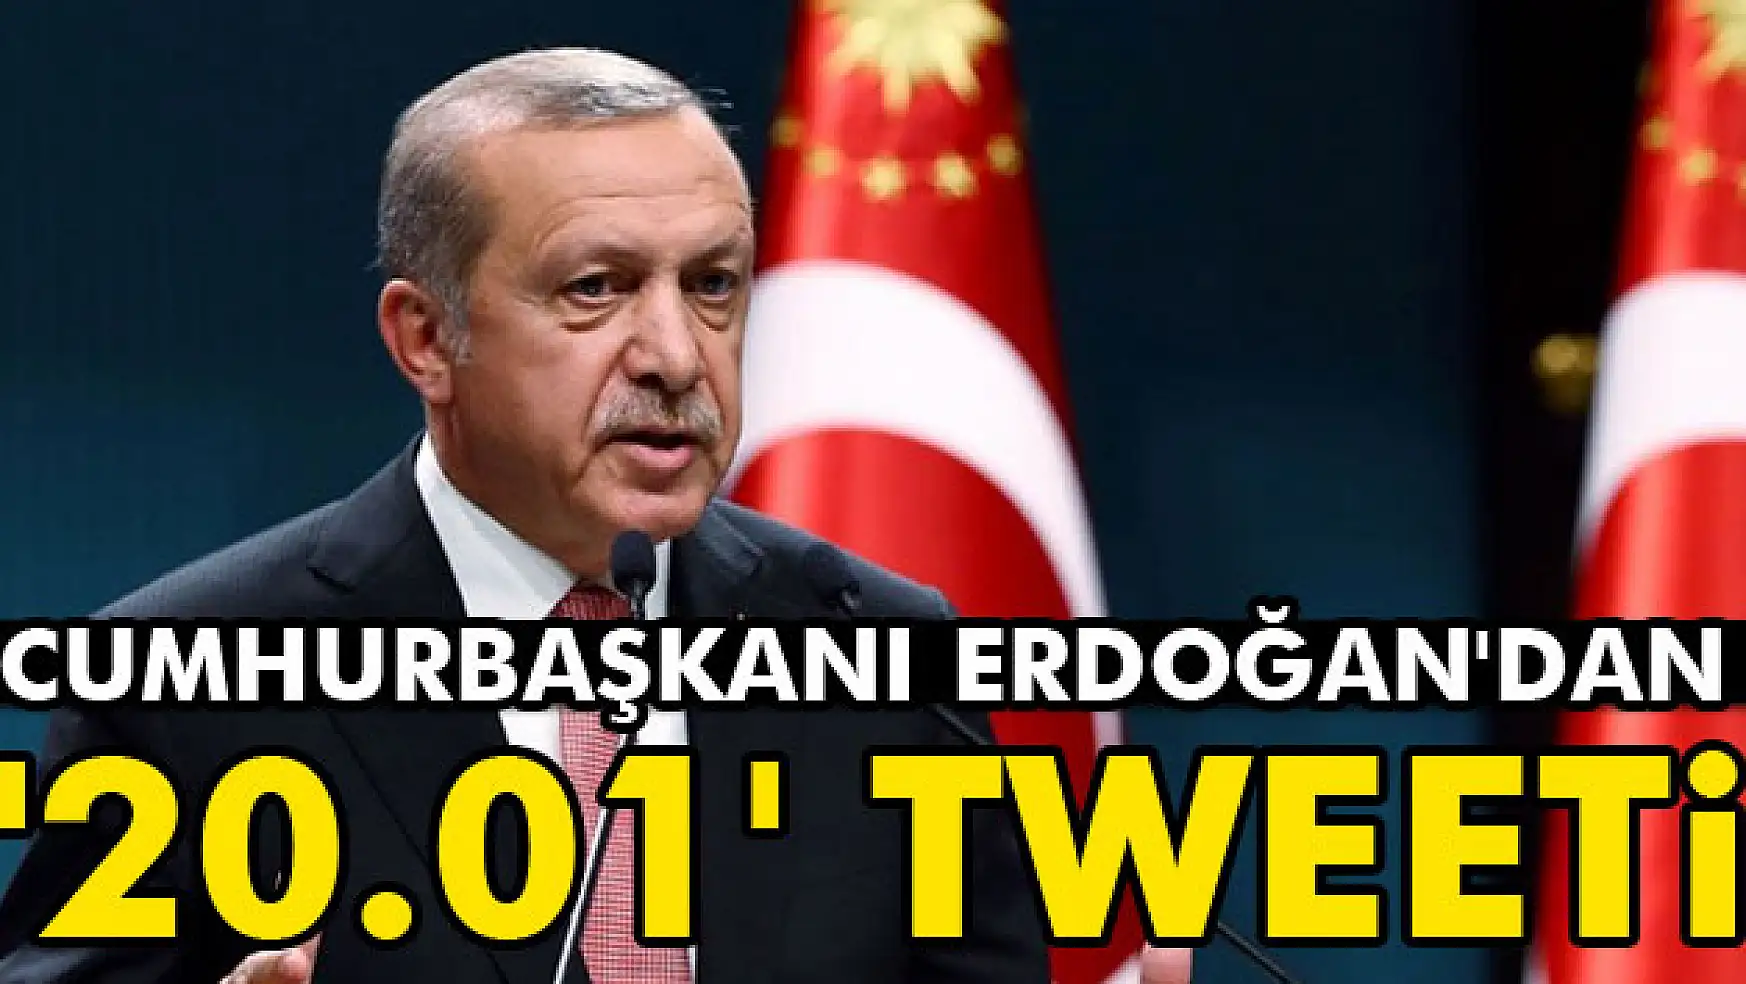 Cumhurbaşkanı Erdoğan'dan '20.01' tweeti